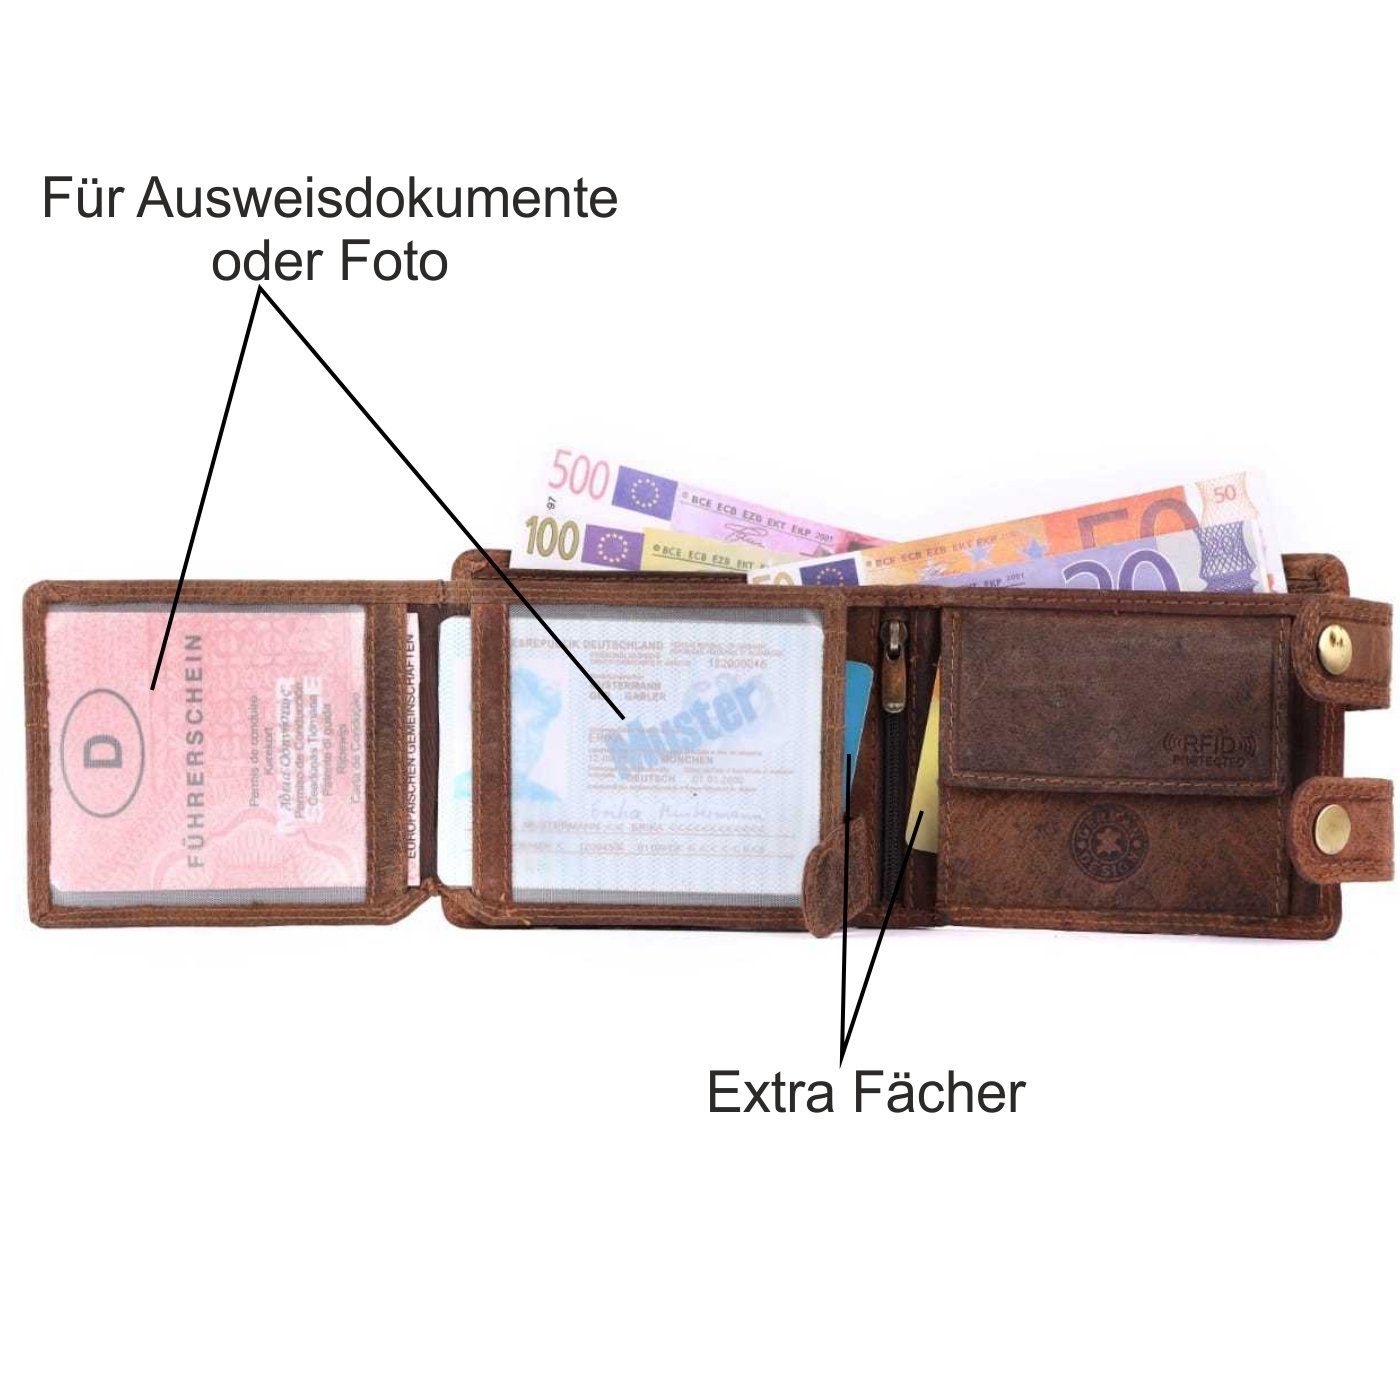 SHG Geldbörse Herren Leder Börse Portemonnaie, Männerbörse Kette mit Lederbörse Büffelleder Münzfach RFID Schutz mit Brieftasche